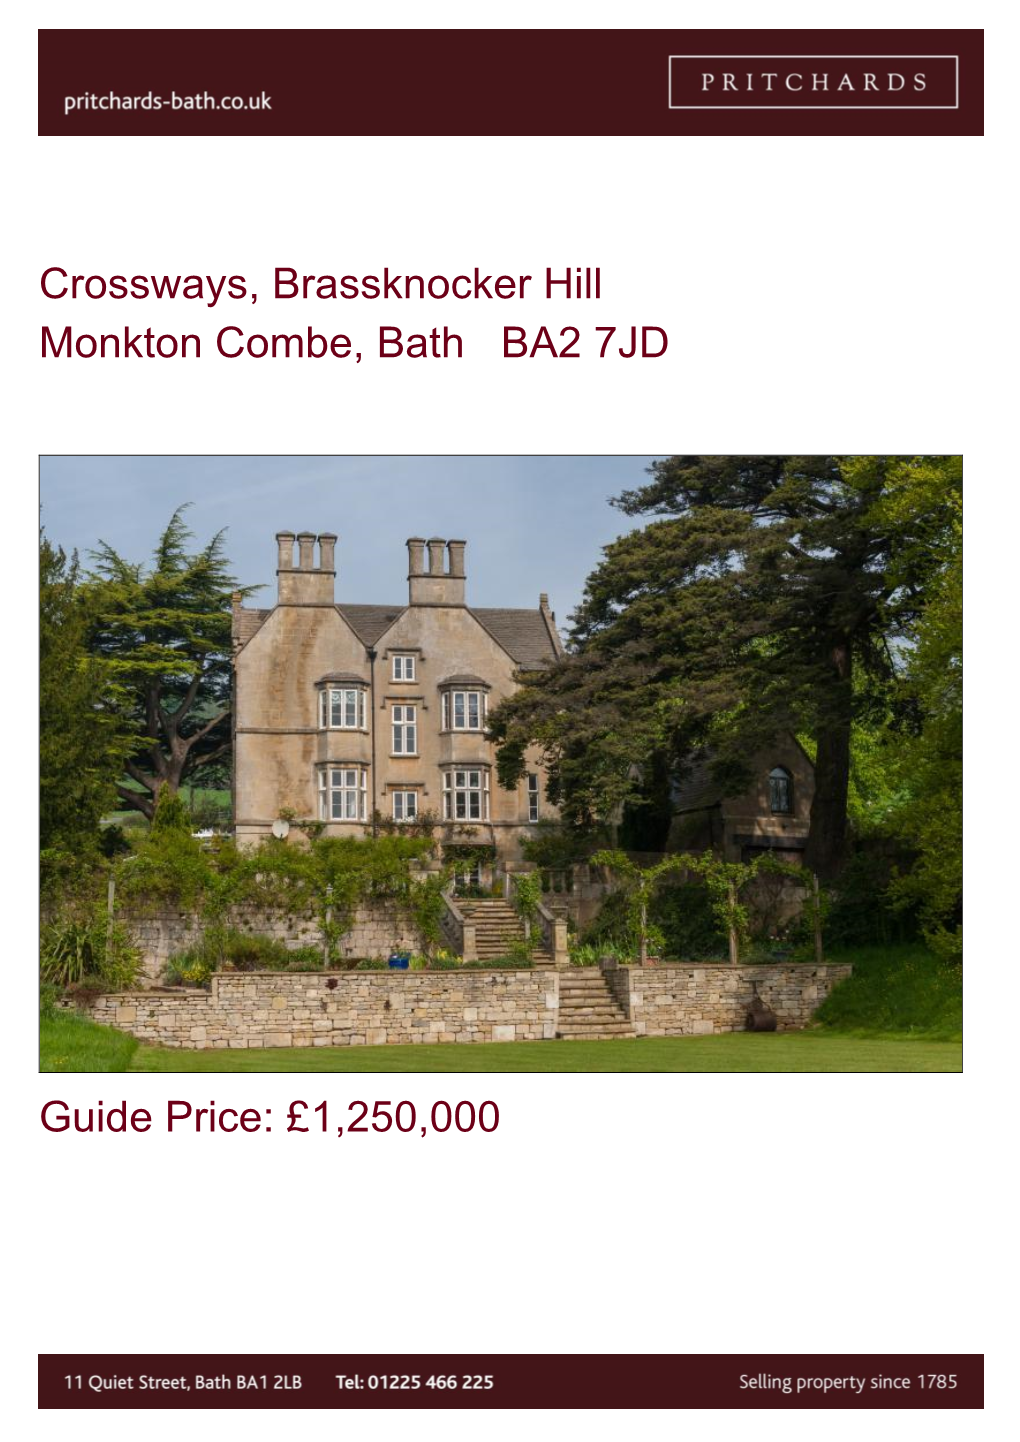 Crossways, Brassknocker Hill Monkton Combe, Bath BA2 7JD